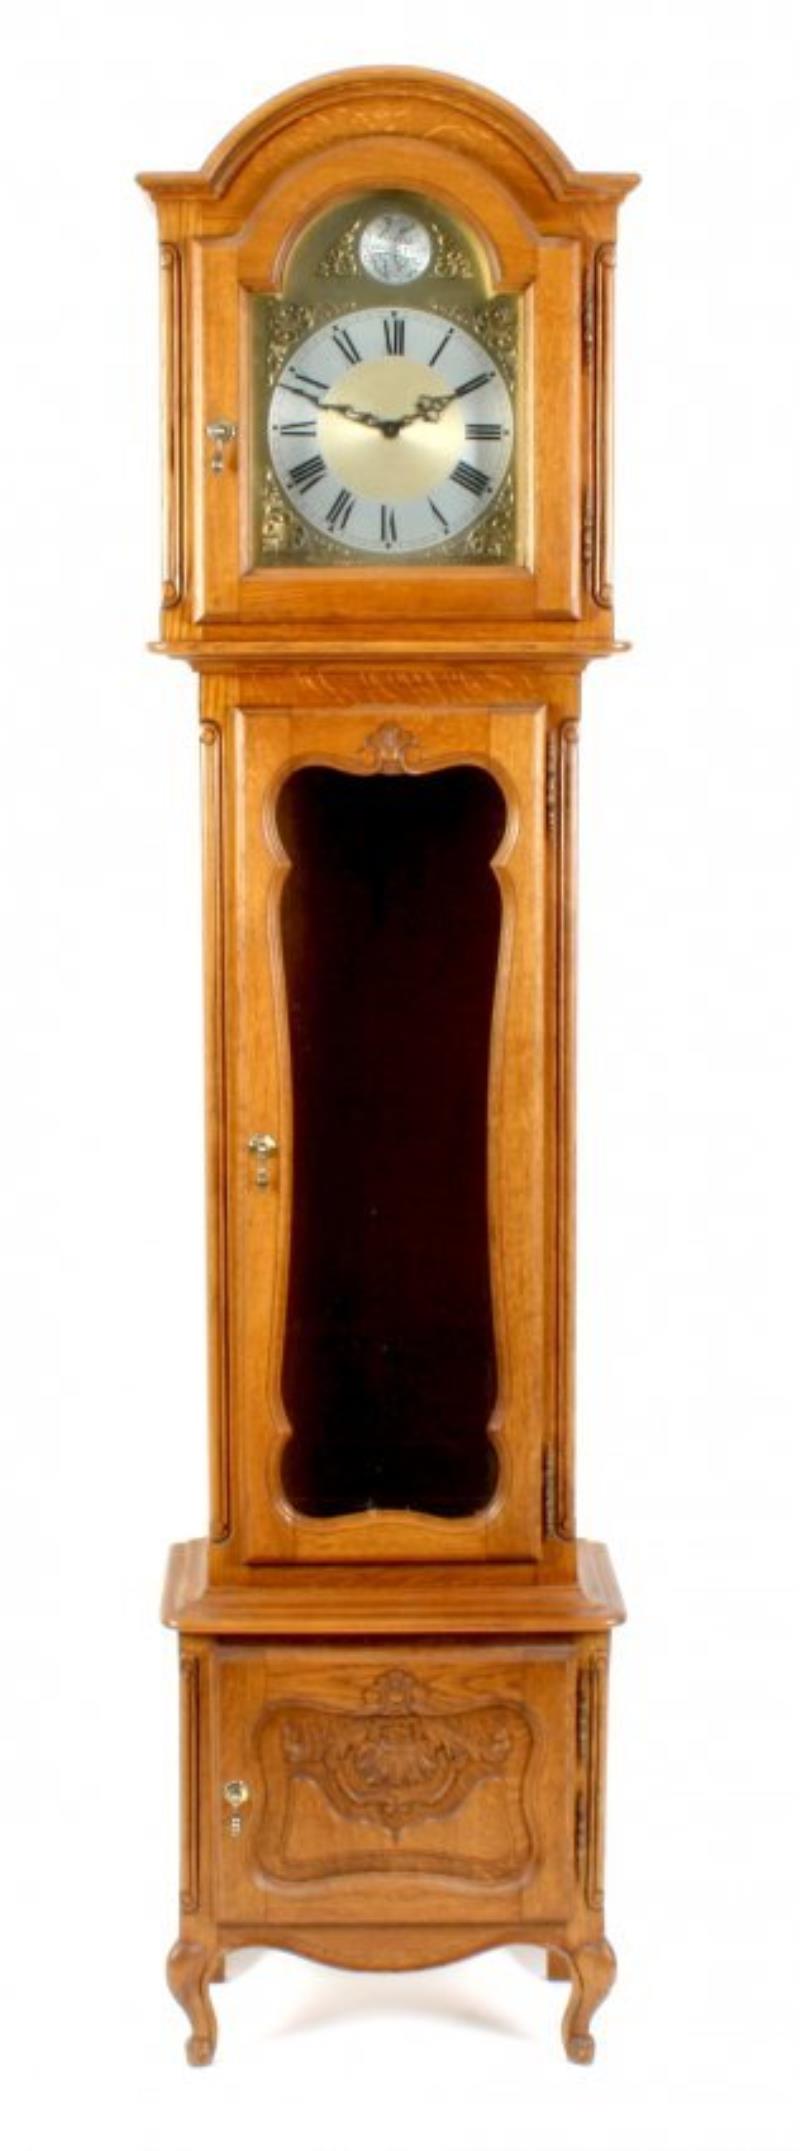 A modern oak-cased chiming long-case clock.